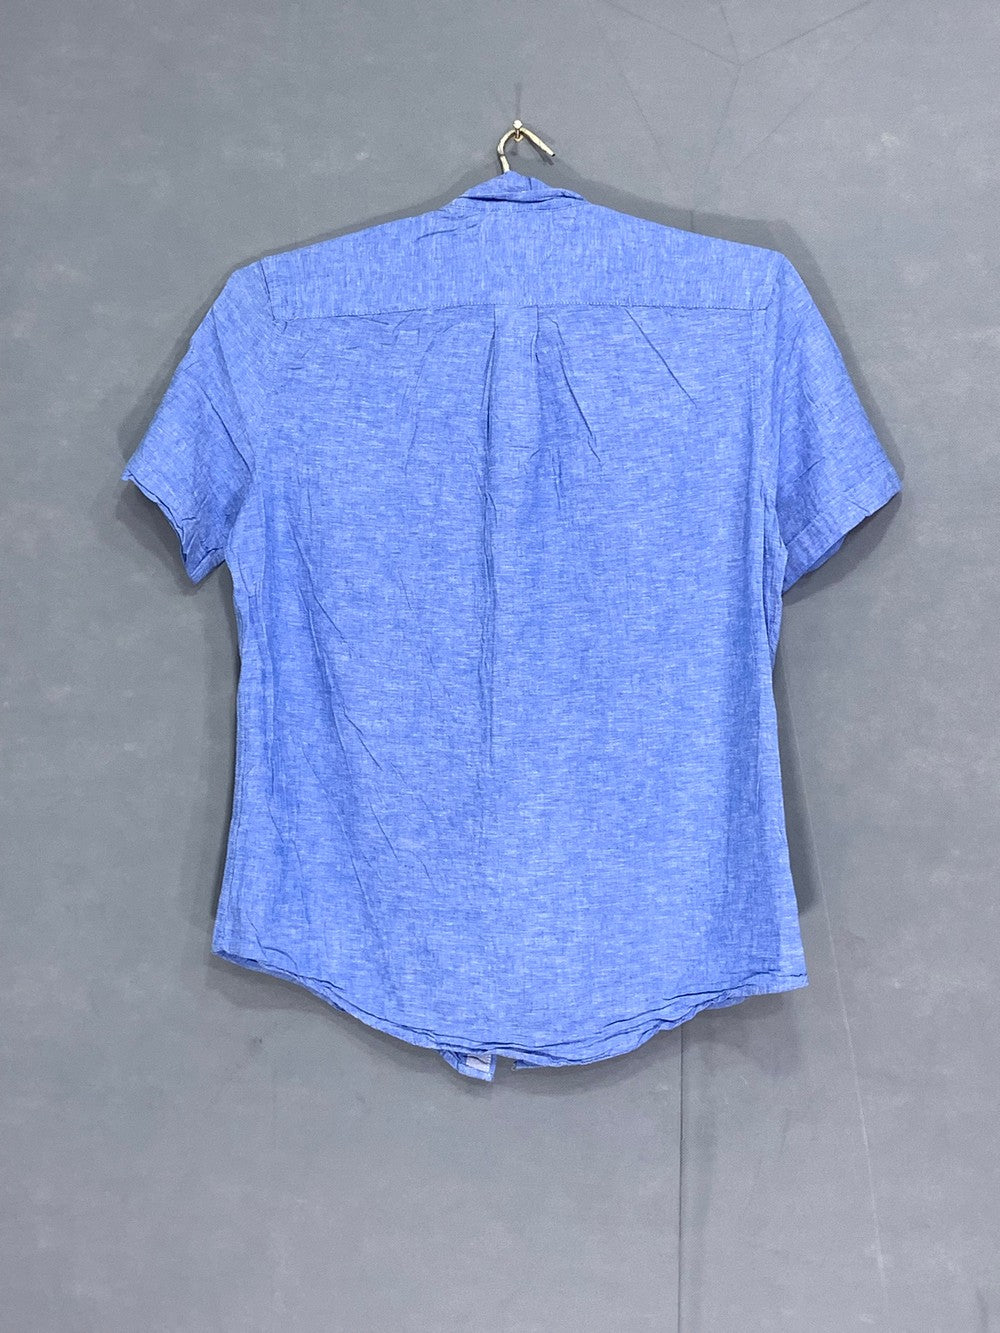 Tommy-Hilfiger Branded Original Cotton Shirt For Men